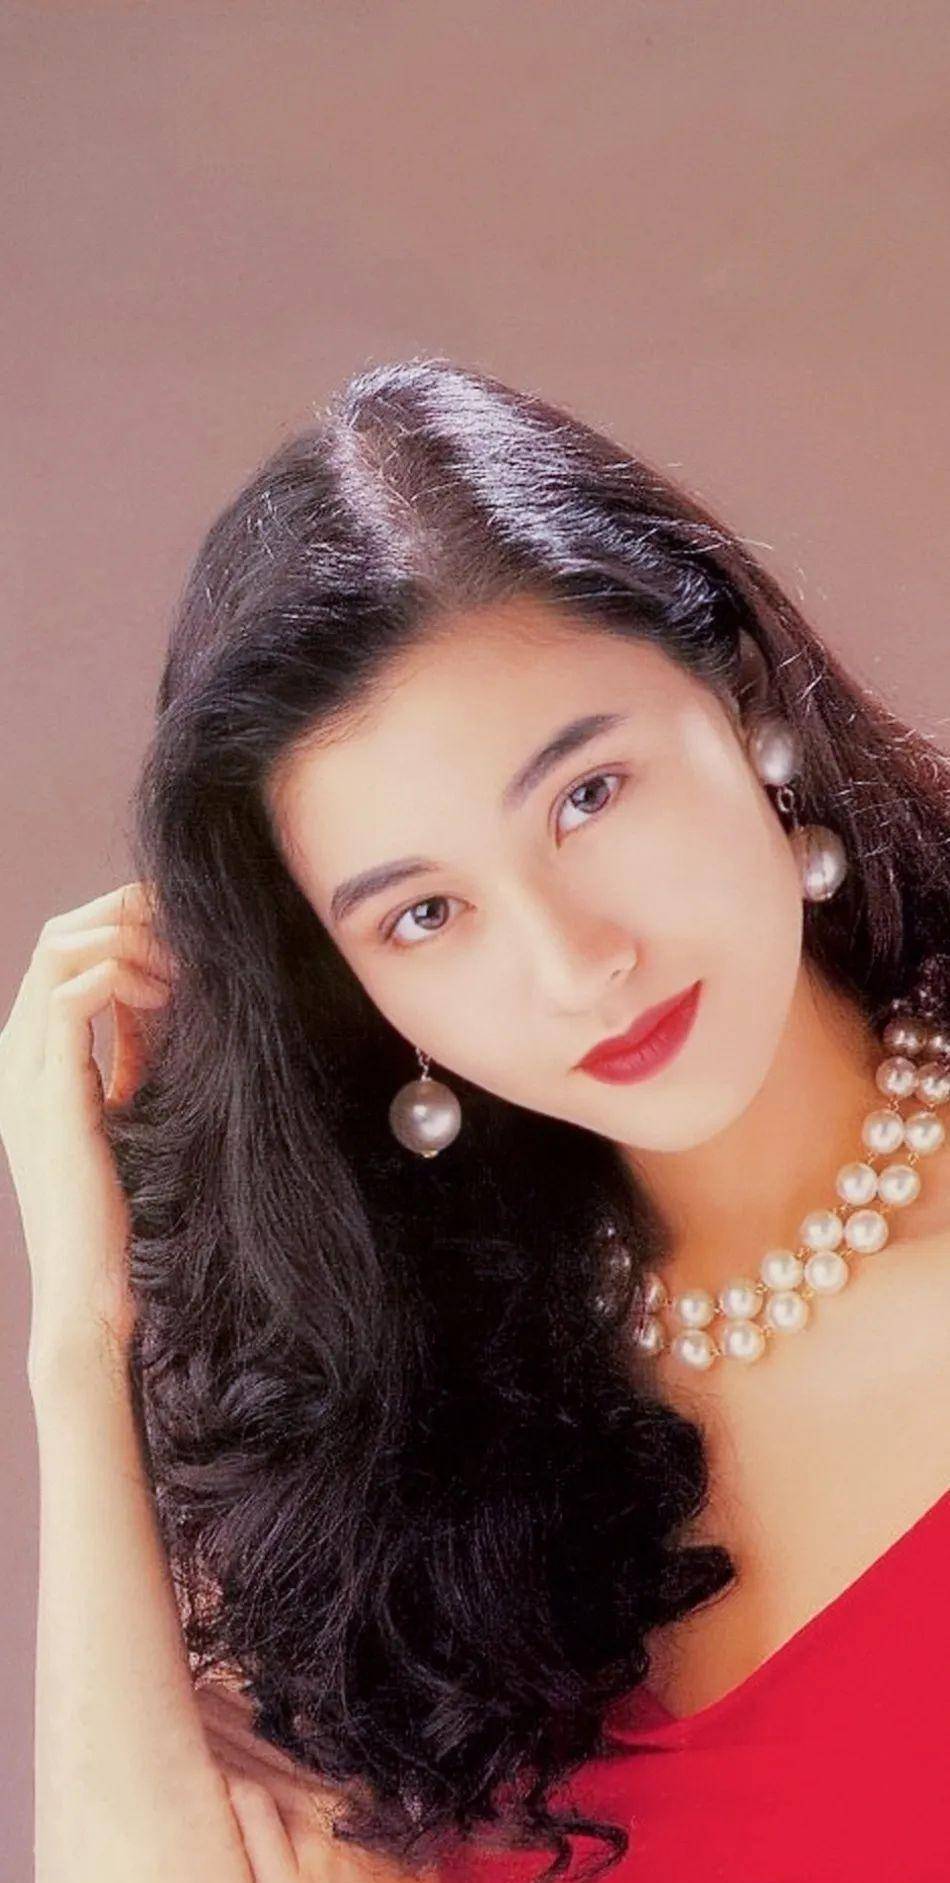 香港女演员 80年代图片